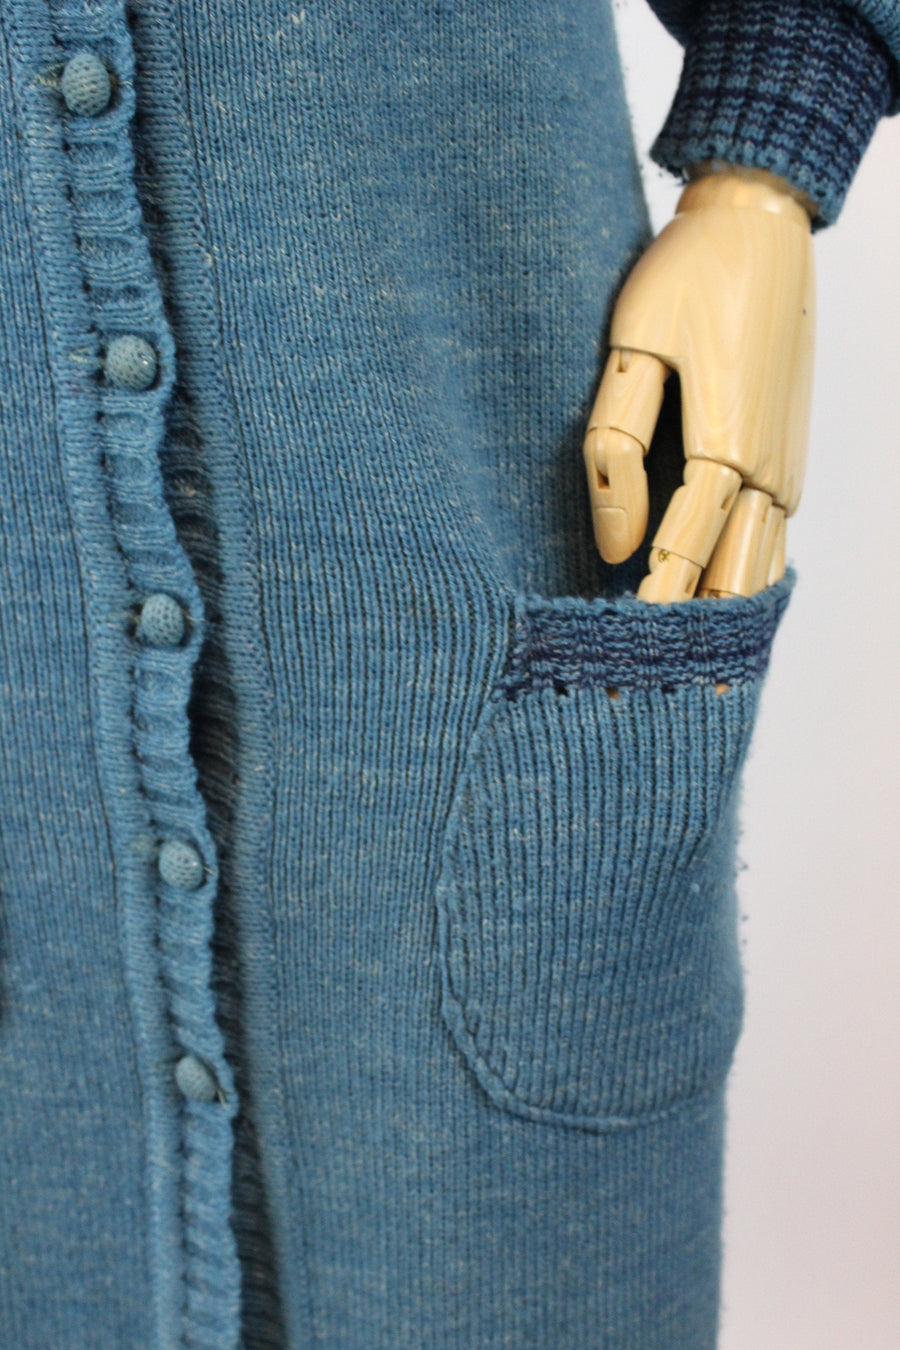 1970s KNIT duster dress small medium | new knitwear